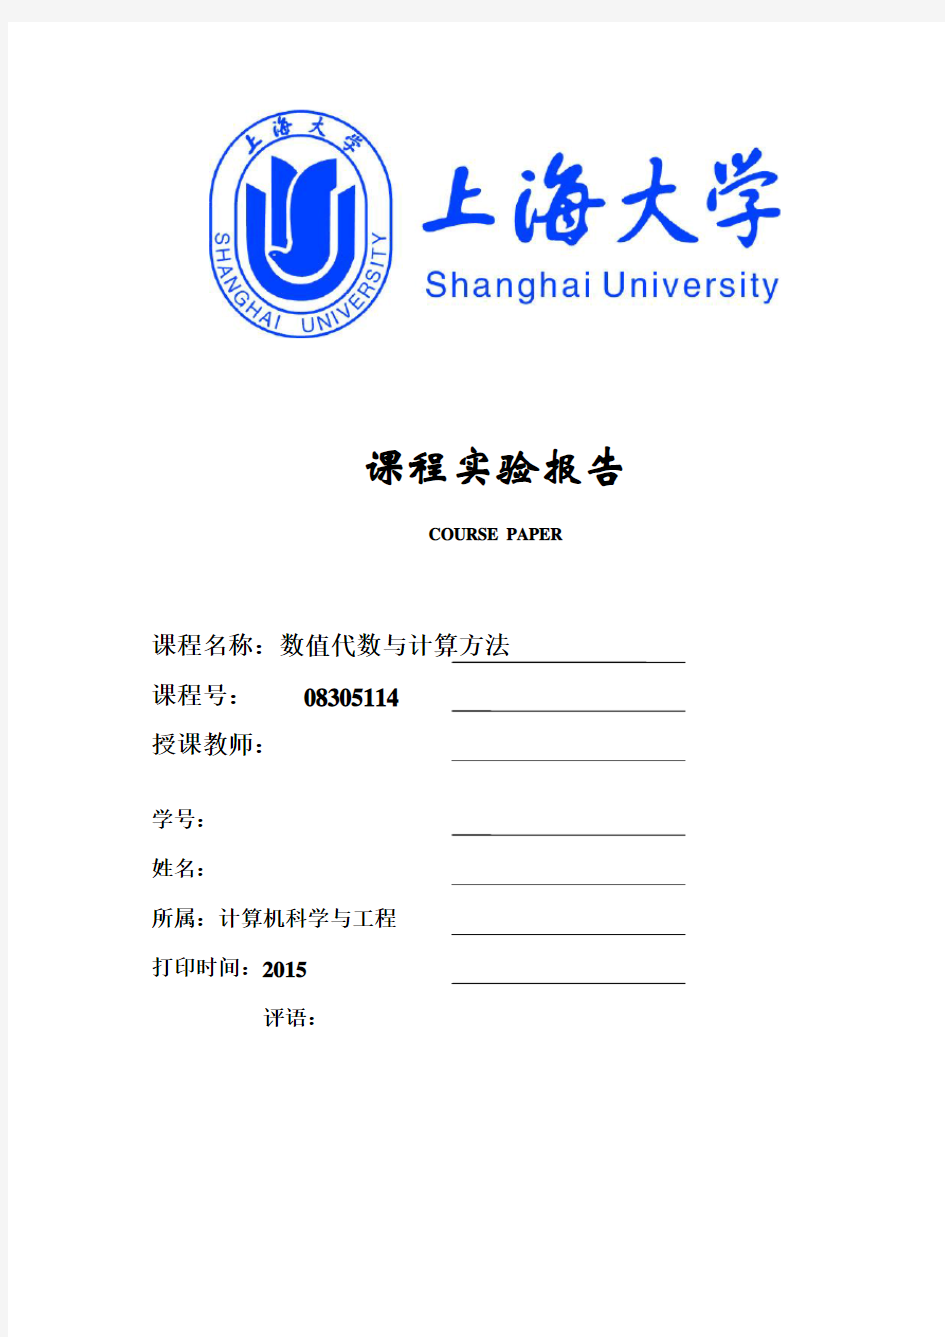 上海大学课程实验报告-数值代数